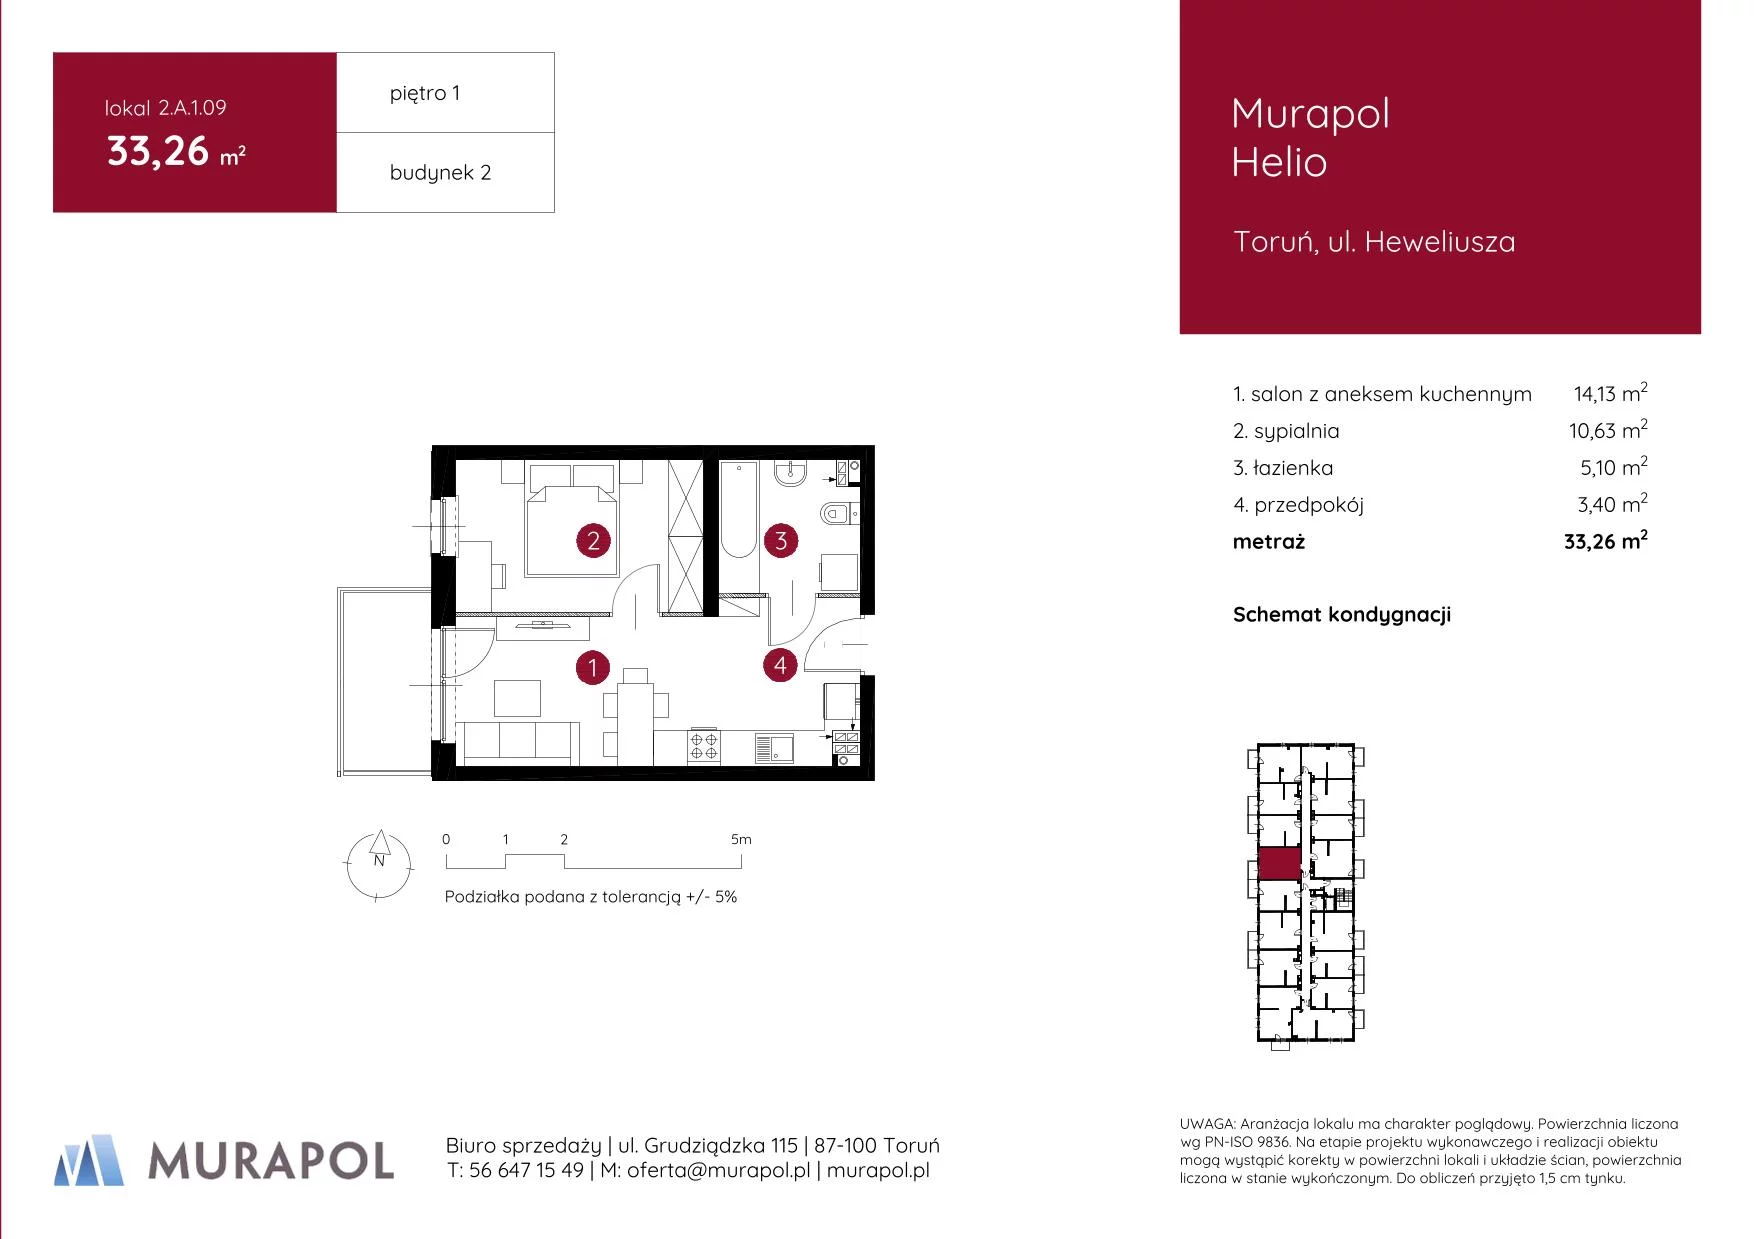 Mieszkanie 33,26 m², piętro 1, oferta nr 2.A.1.09, Murapol Helio, Toruń, Wrzosy, JAR, ul. Heweliusza